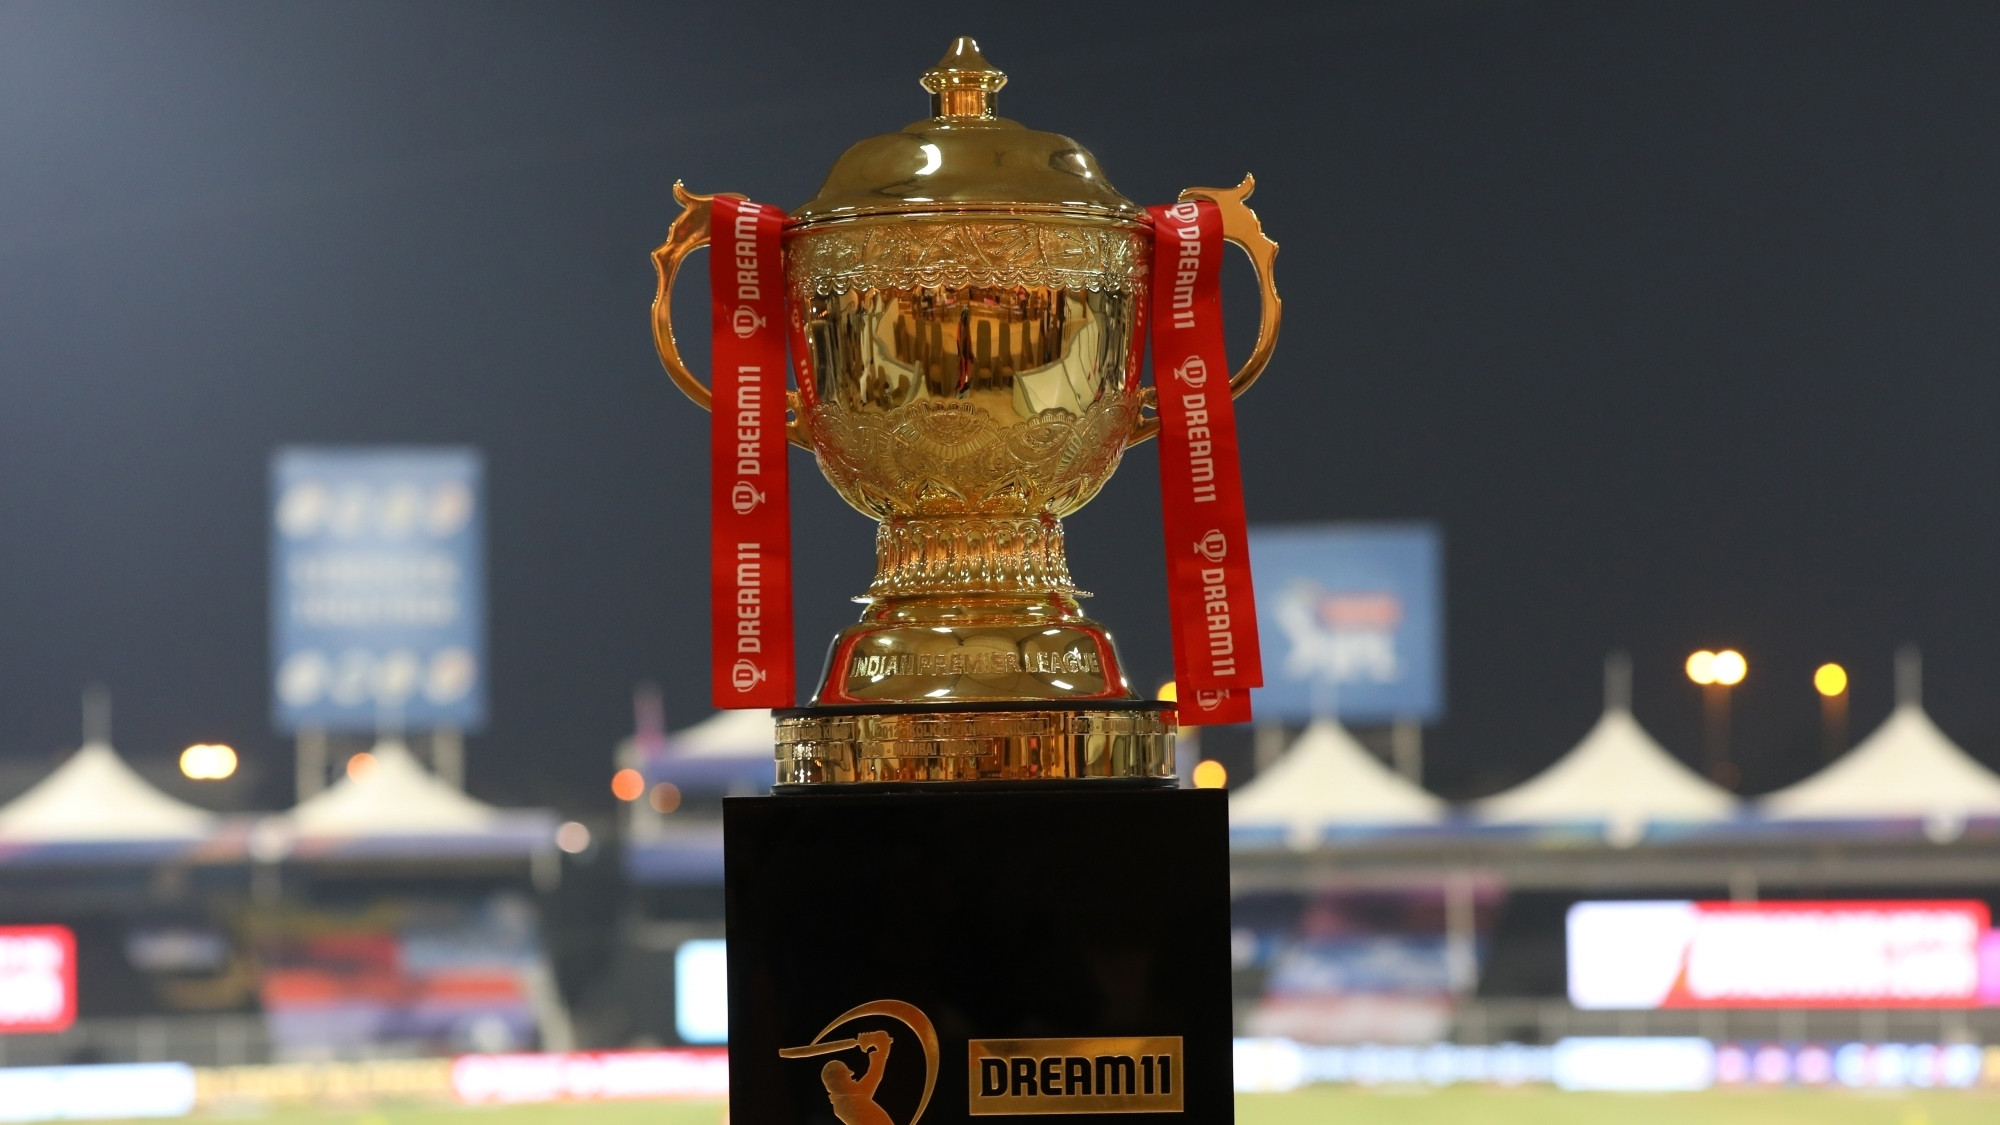 Dream11 was the IPL title sponsor last year | BCCI/IPL